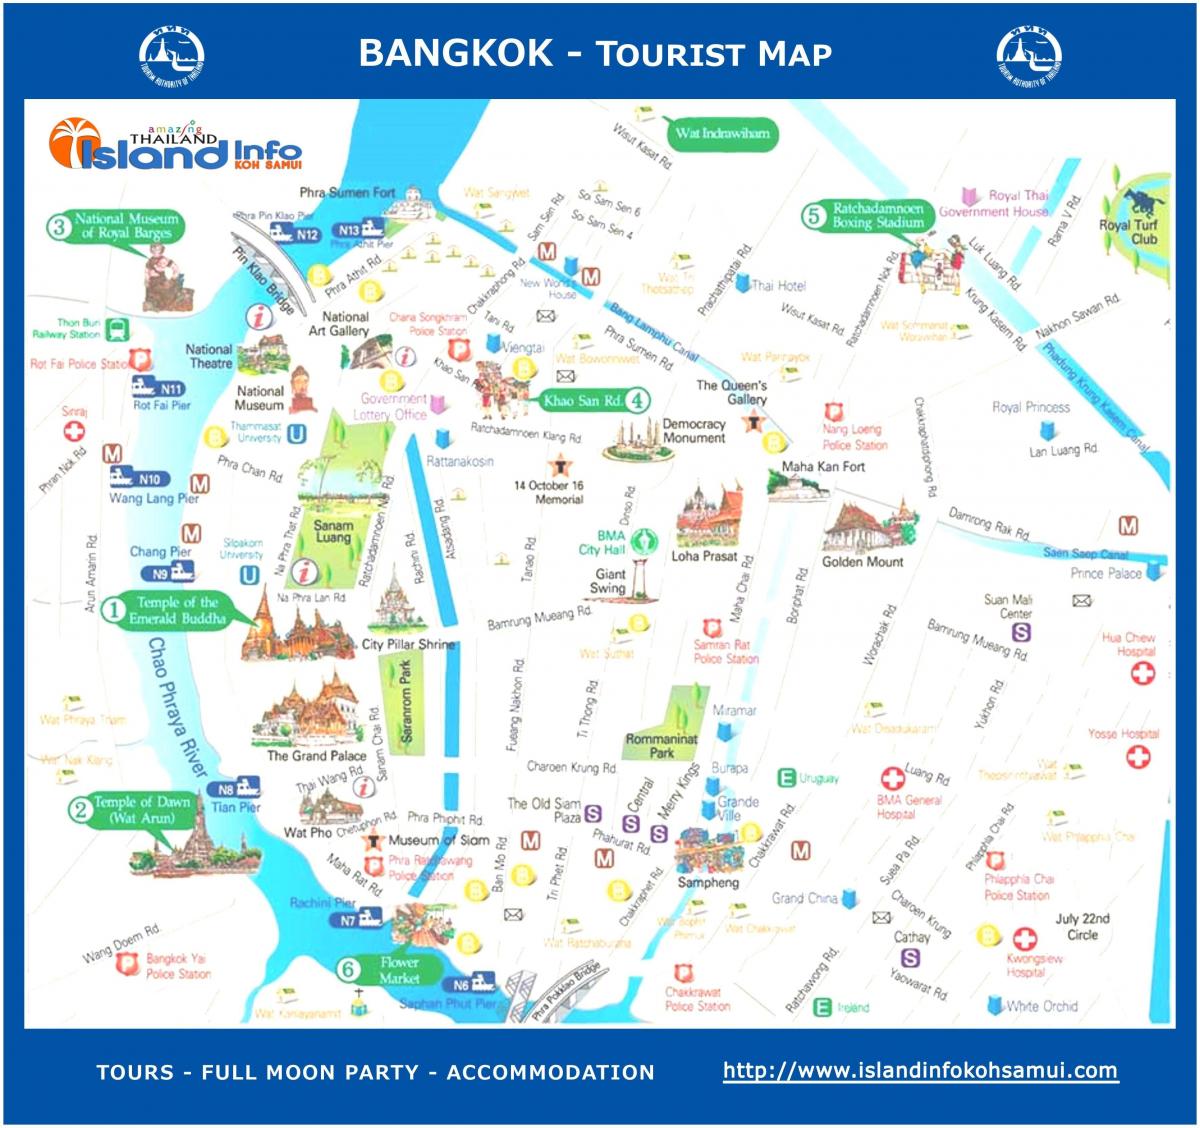 bangkok მოგზაურობა სახელმძღვანელო, რუკა